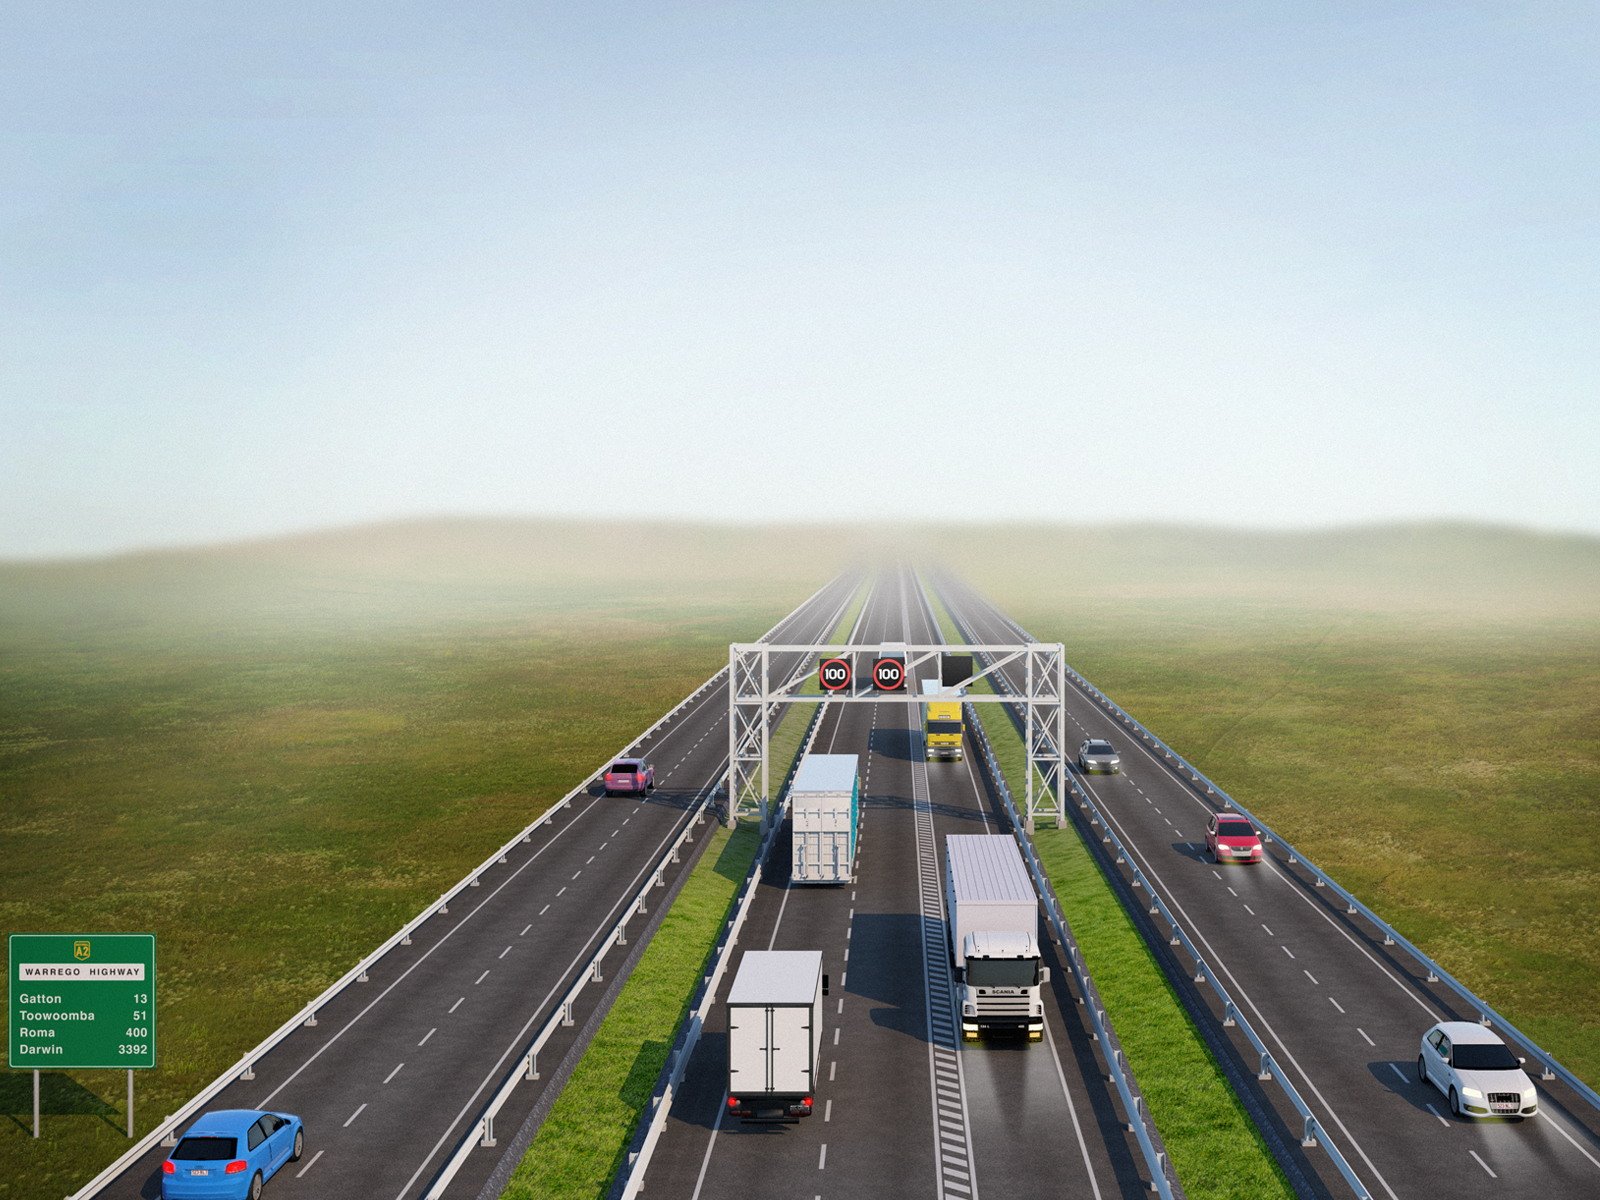 Warrego Highway Concept 3D Render